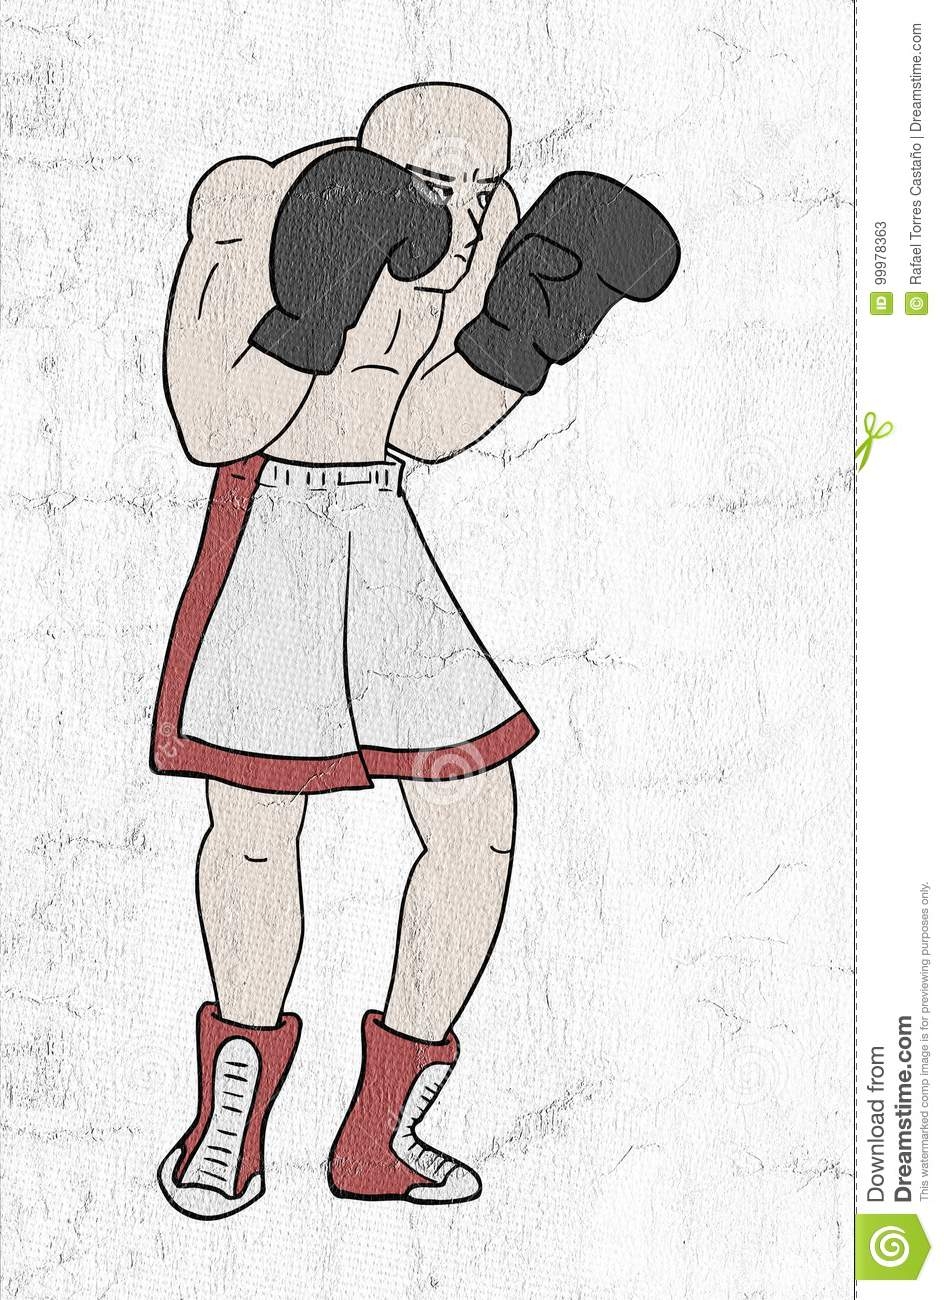 Прикольные рисунки про боксера человек